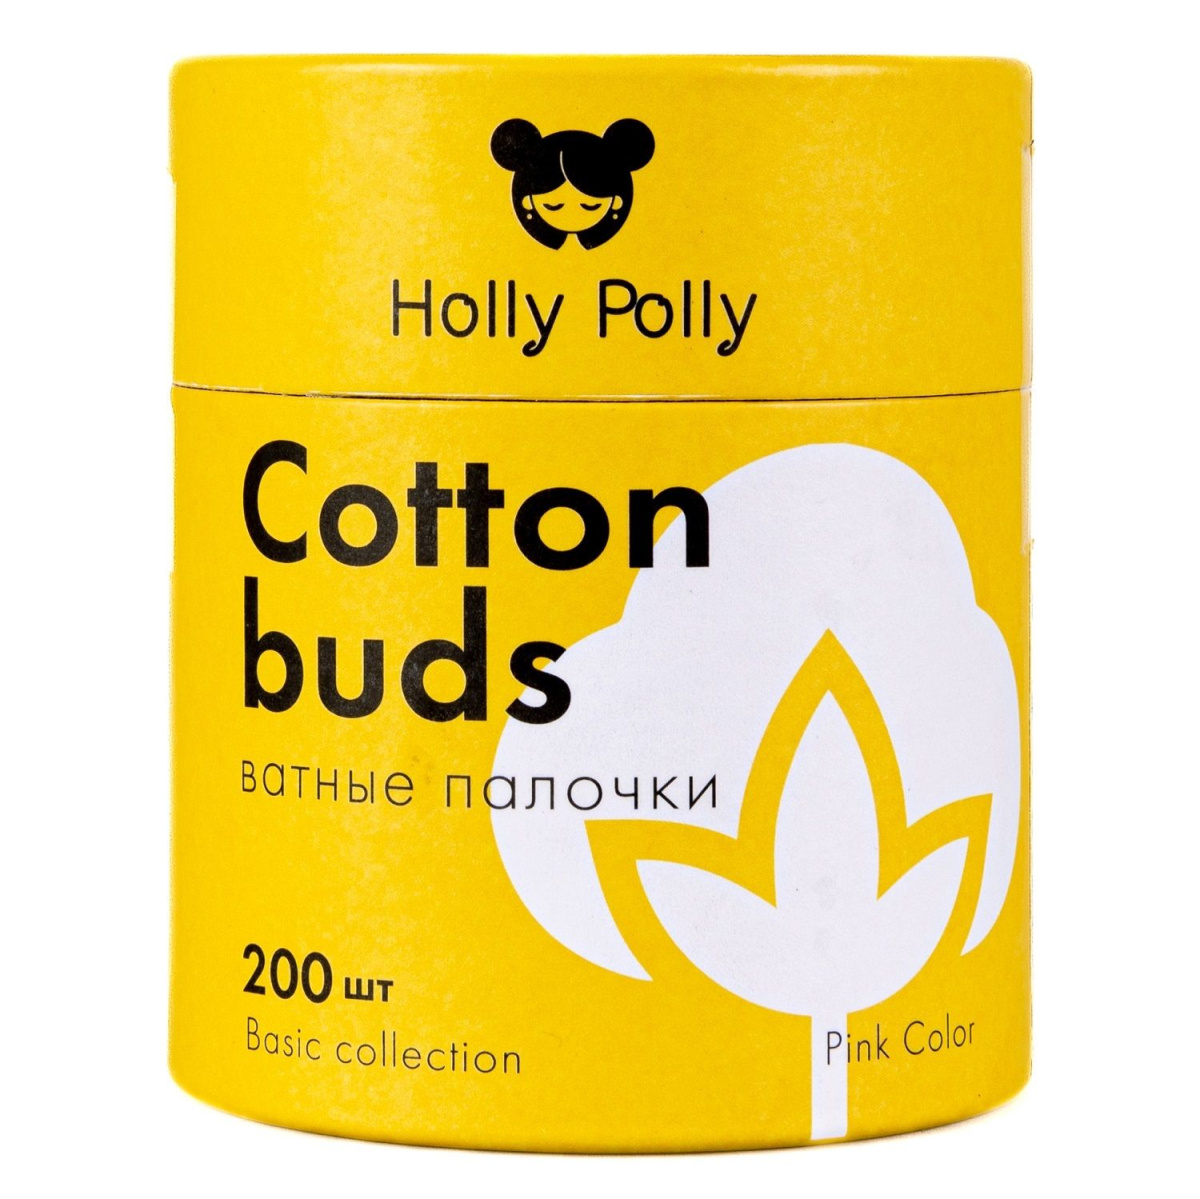 Holly Polly - Ватные палочки бамбуковые косметические розовые 200 шт Holly Polly (Россия) купить по цене 199 руб.